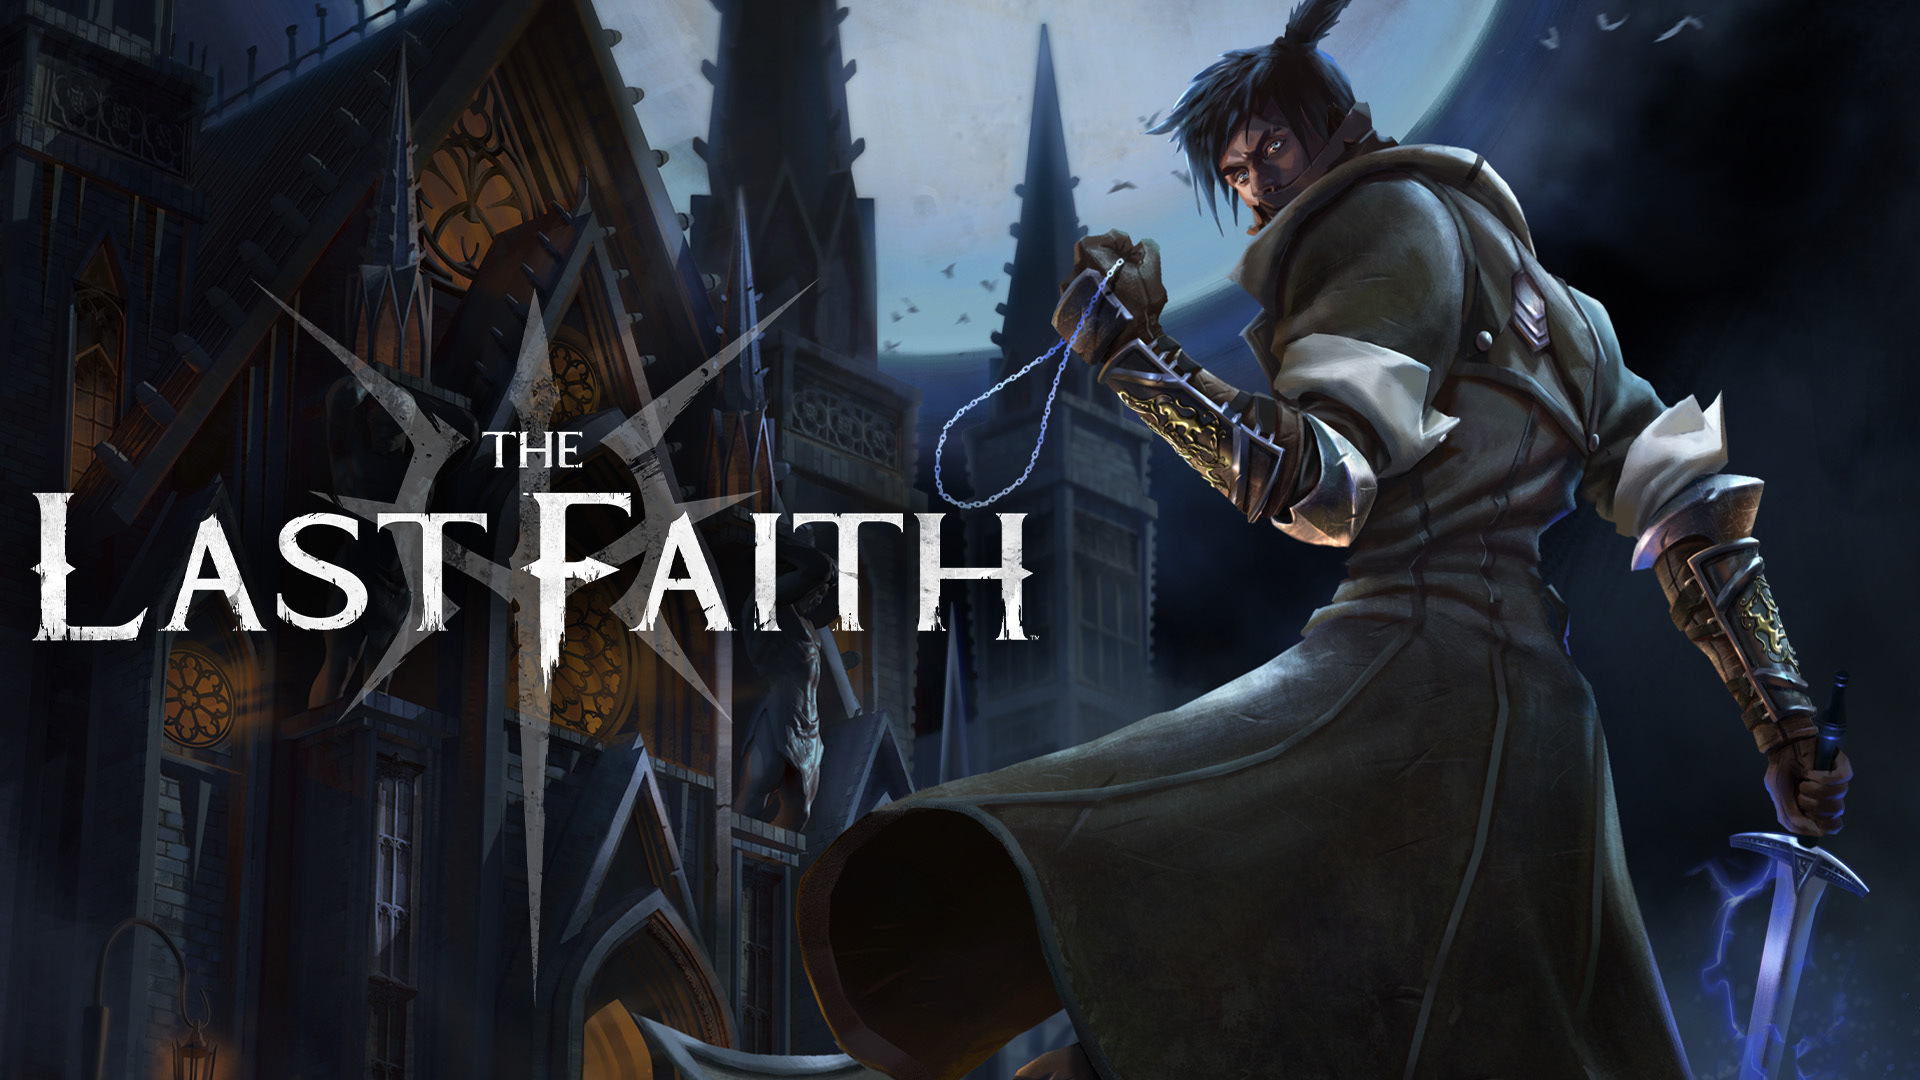 The Last Faith #18 (Предвестник кошмара)